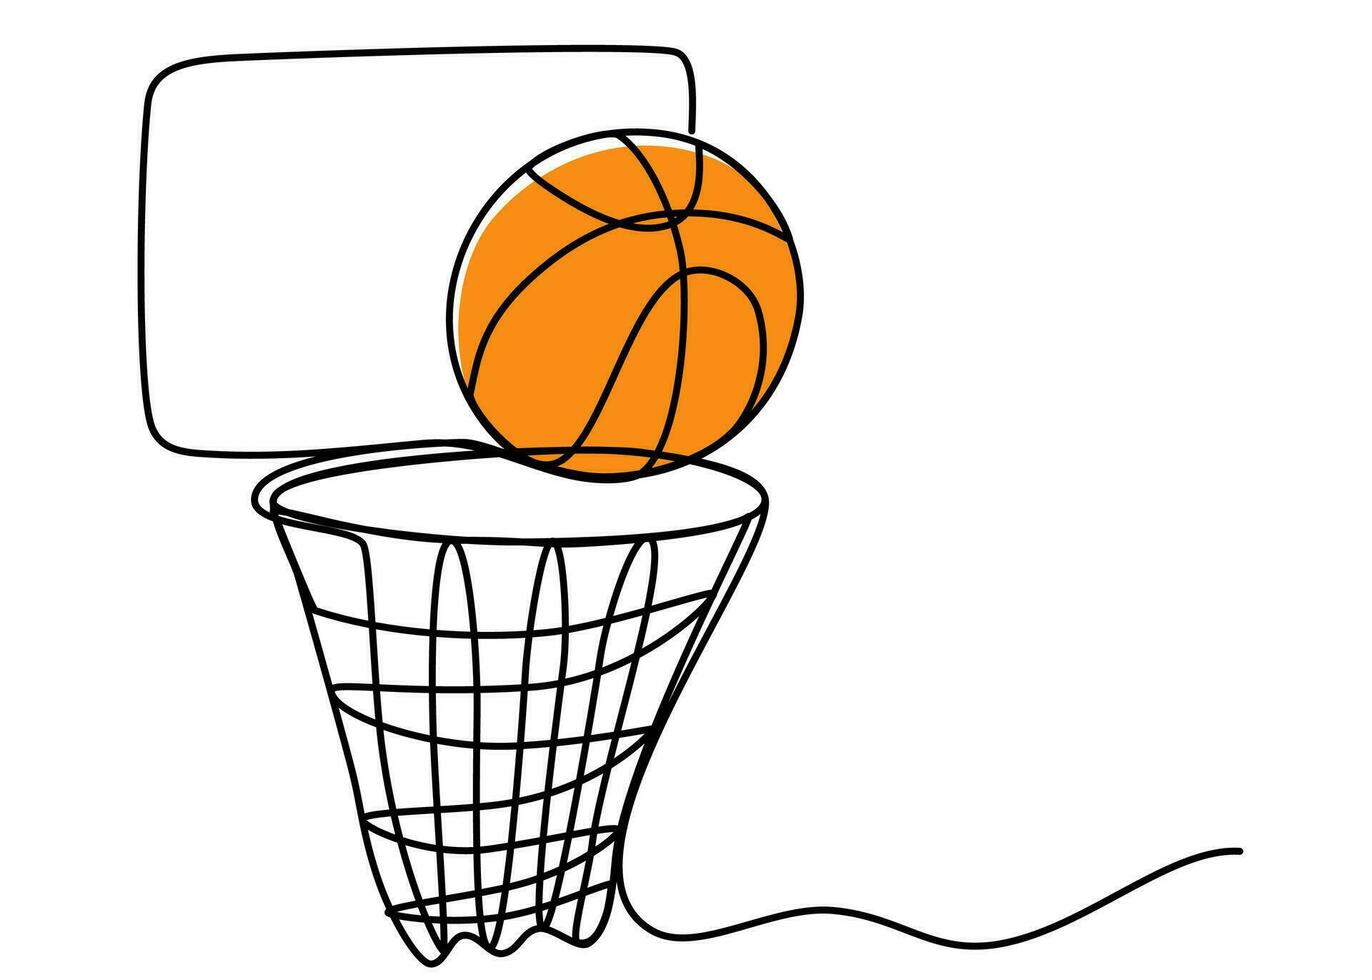 1 contínuo linha desenhando do basquetebol aro com uma bola. esporte, correndo, bola Esportes, atividade, atleta, jogo, treinamento, cesta, pular, jogar. editável AVC. esboço vetor ilustração